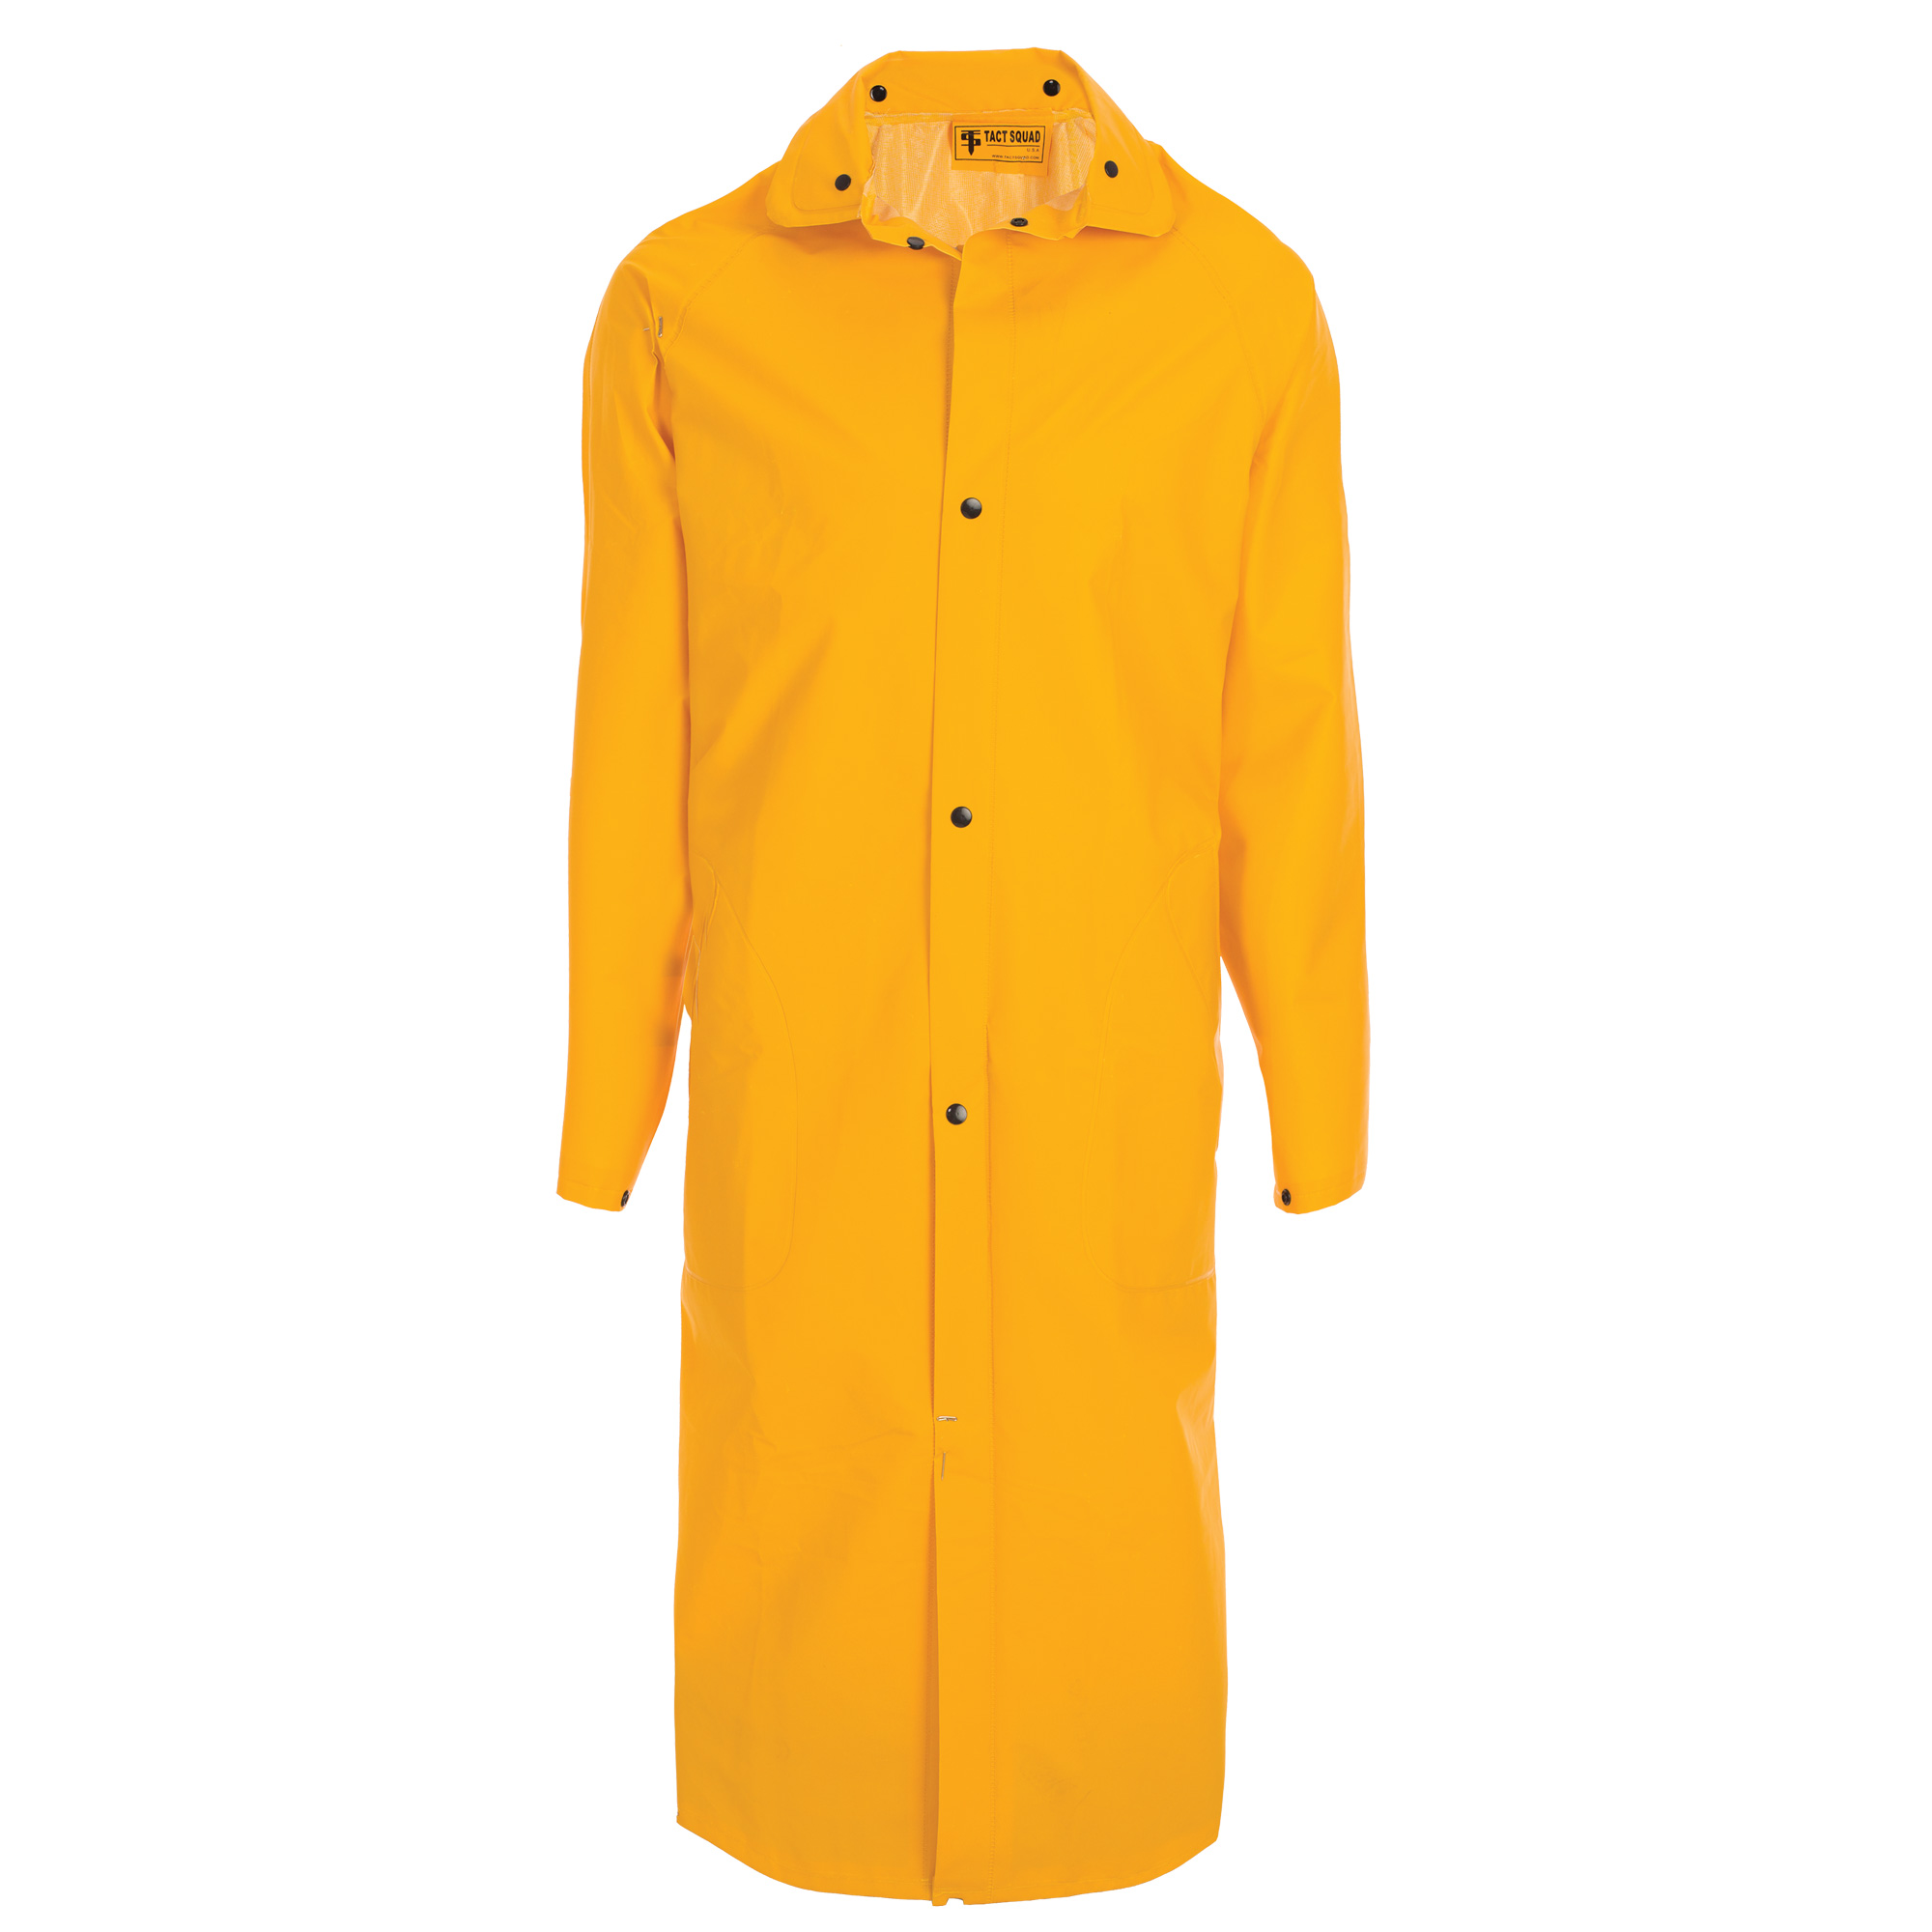 Tact Squad 6011/6012 PVC Coated Raincoat w/ Removable Hood – Tactsquad